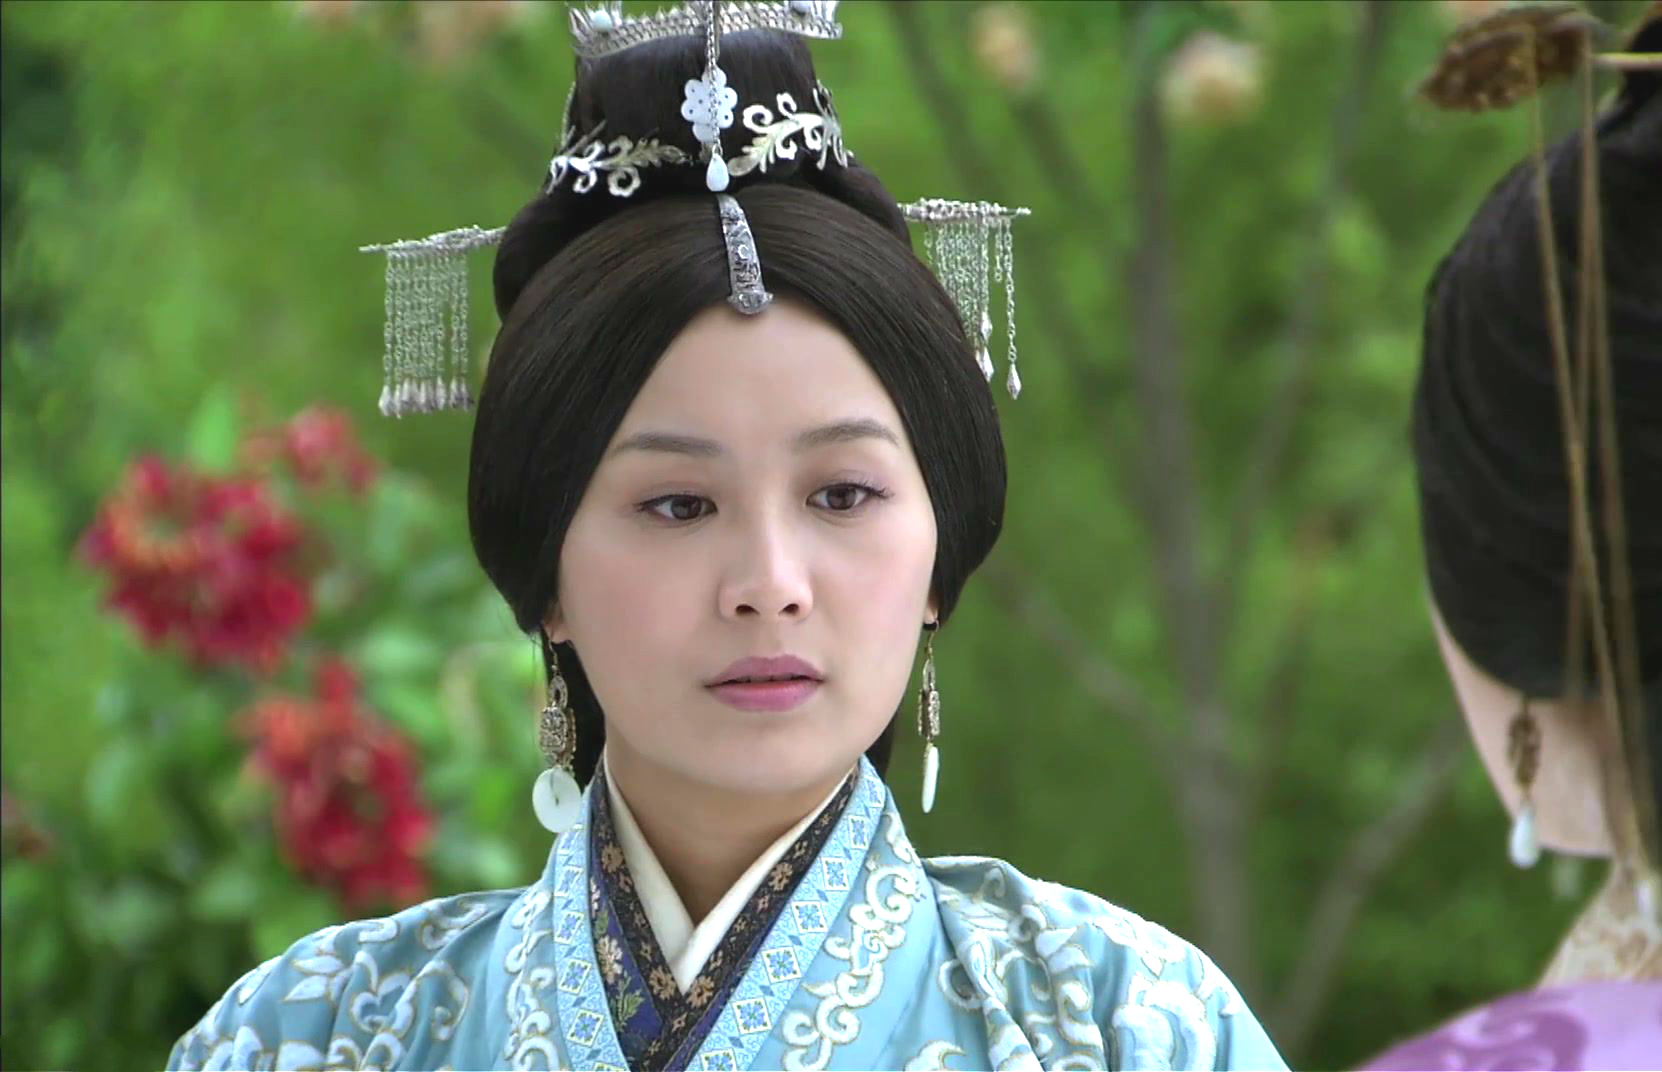 《风中奇缘》中陈法拉扮演秦湘,大概是因为长相较甜美,加上脸型受到